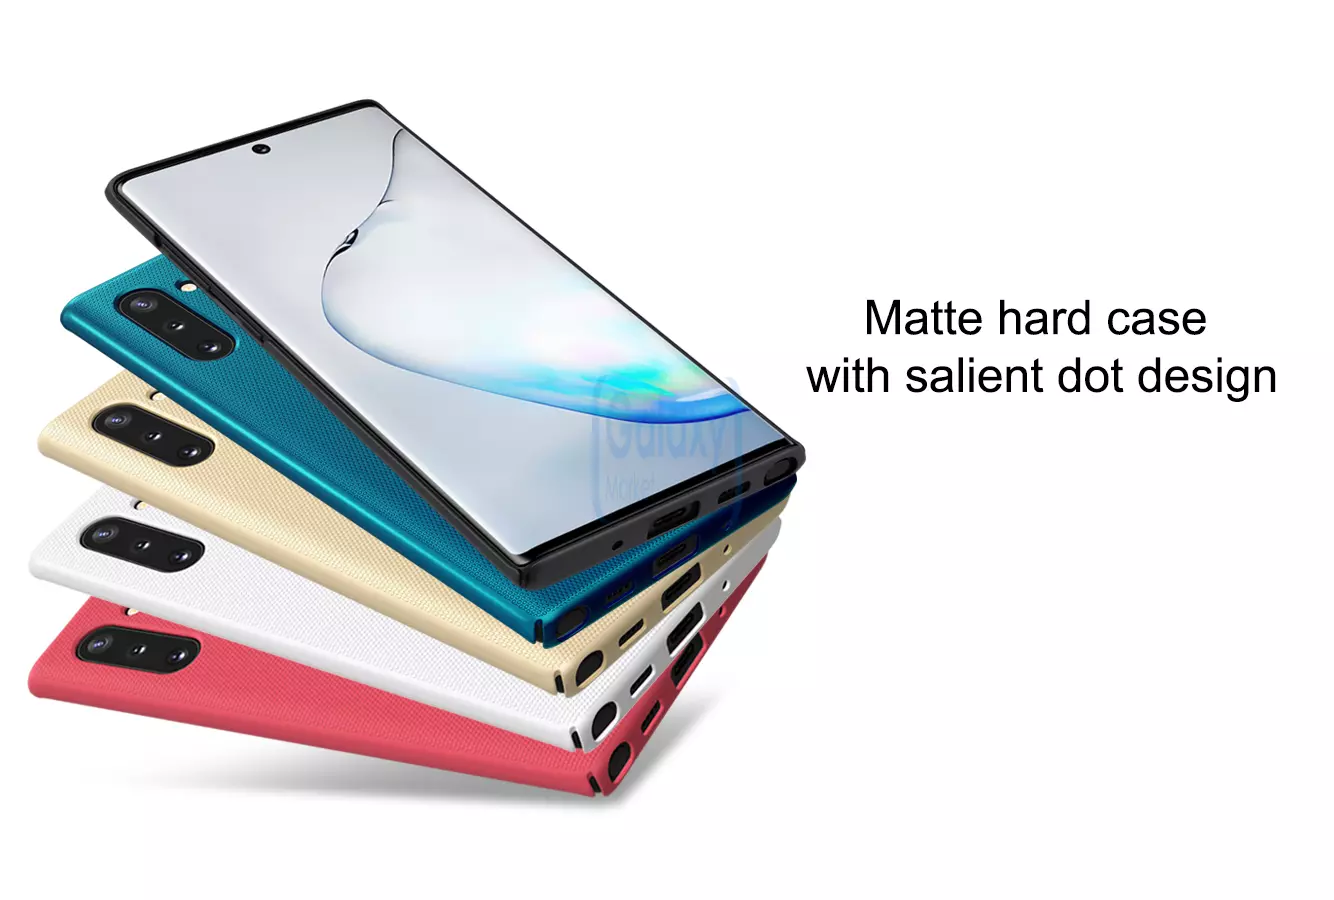 Чехол бампер Nillkin Super Frosted Shield для Samsung Galaxy Note 10 White (Белый)